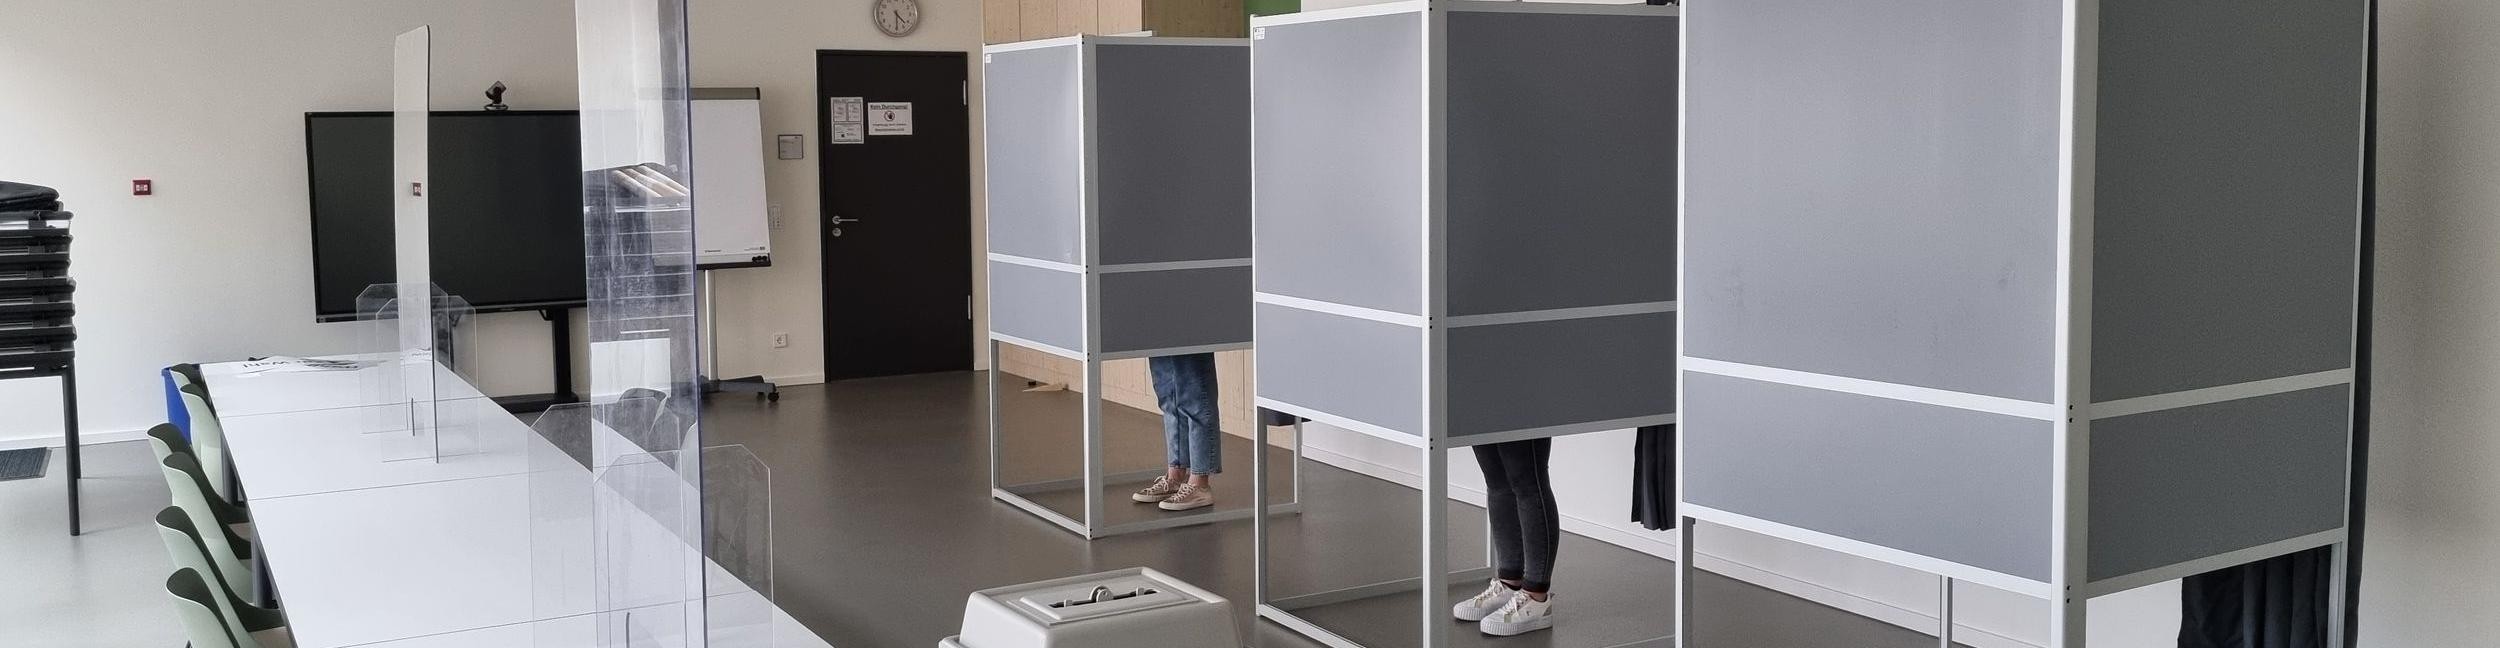 Wahllokal in den Technischen Betrieben in der Plittersdorfer Straße